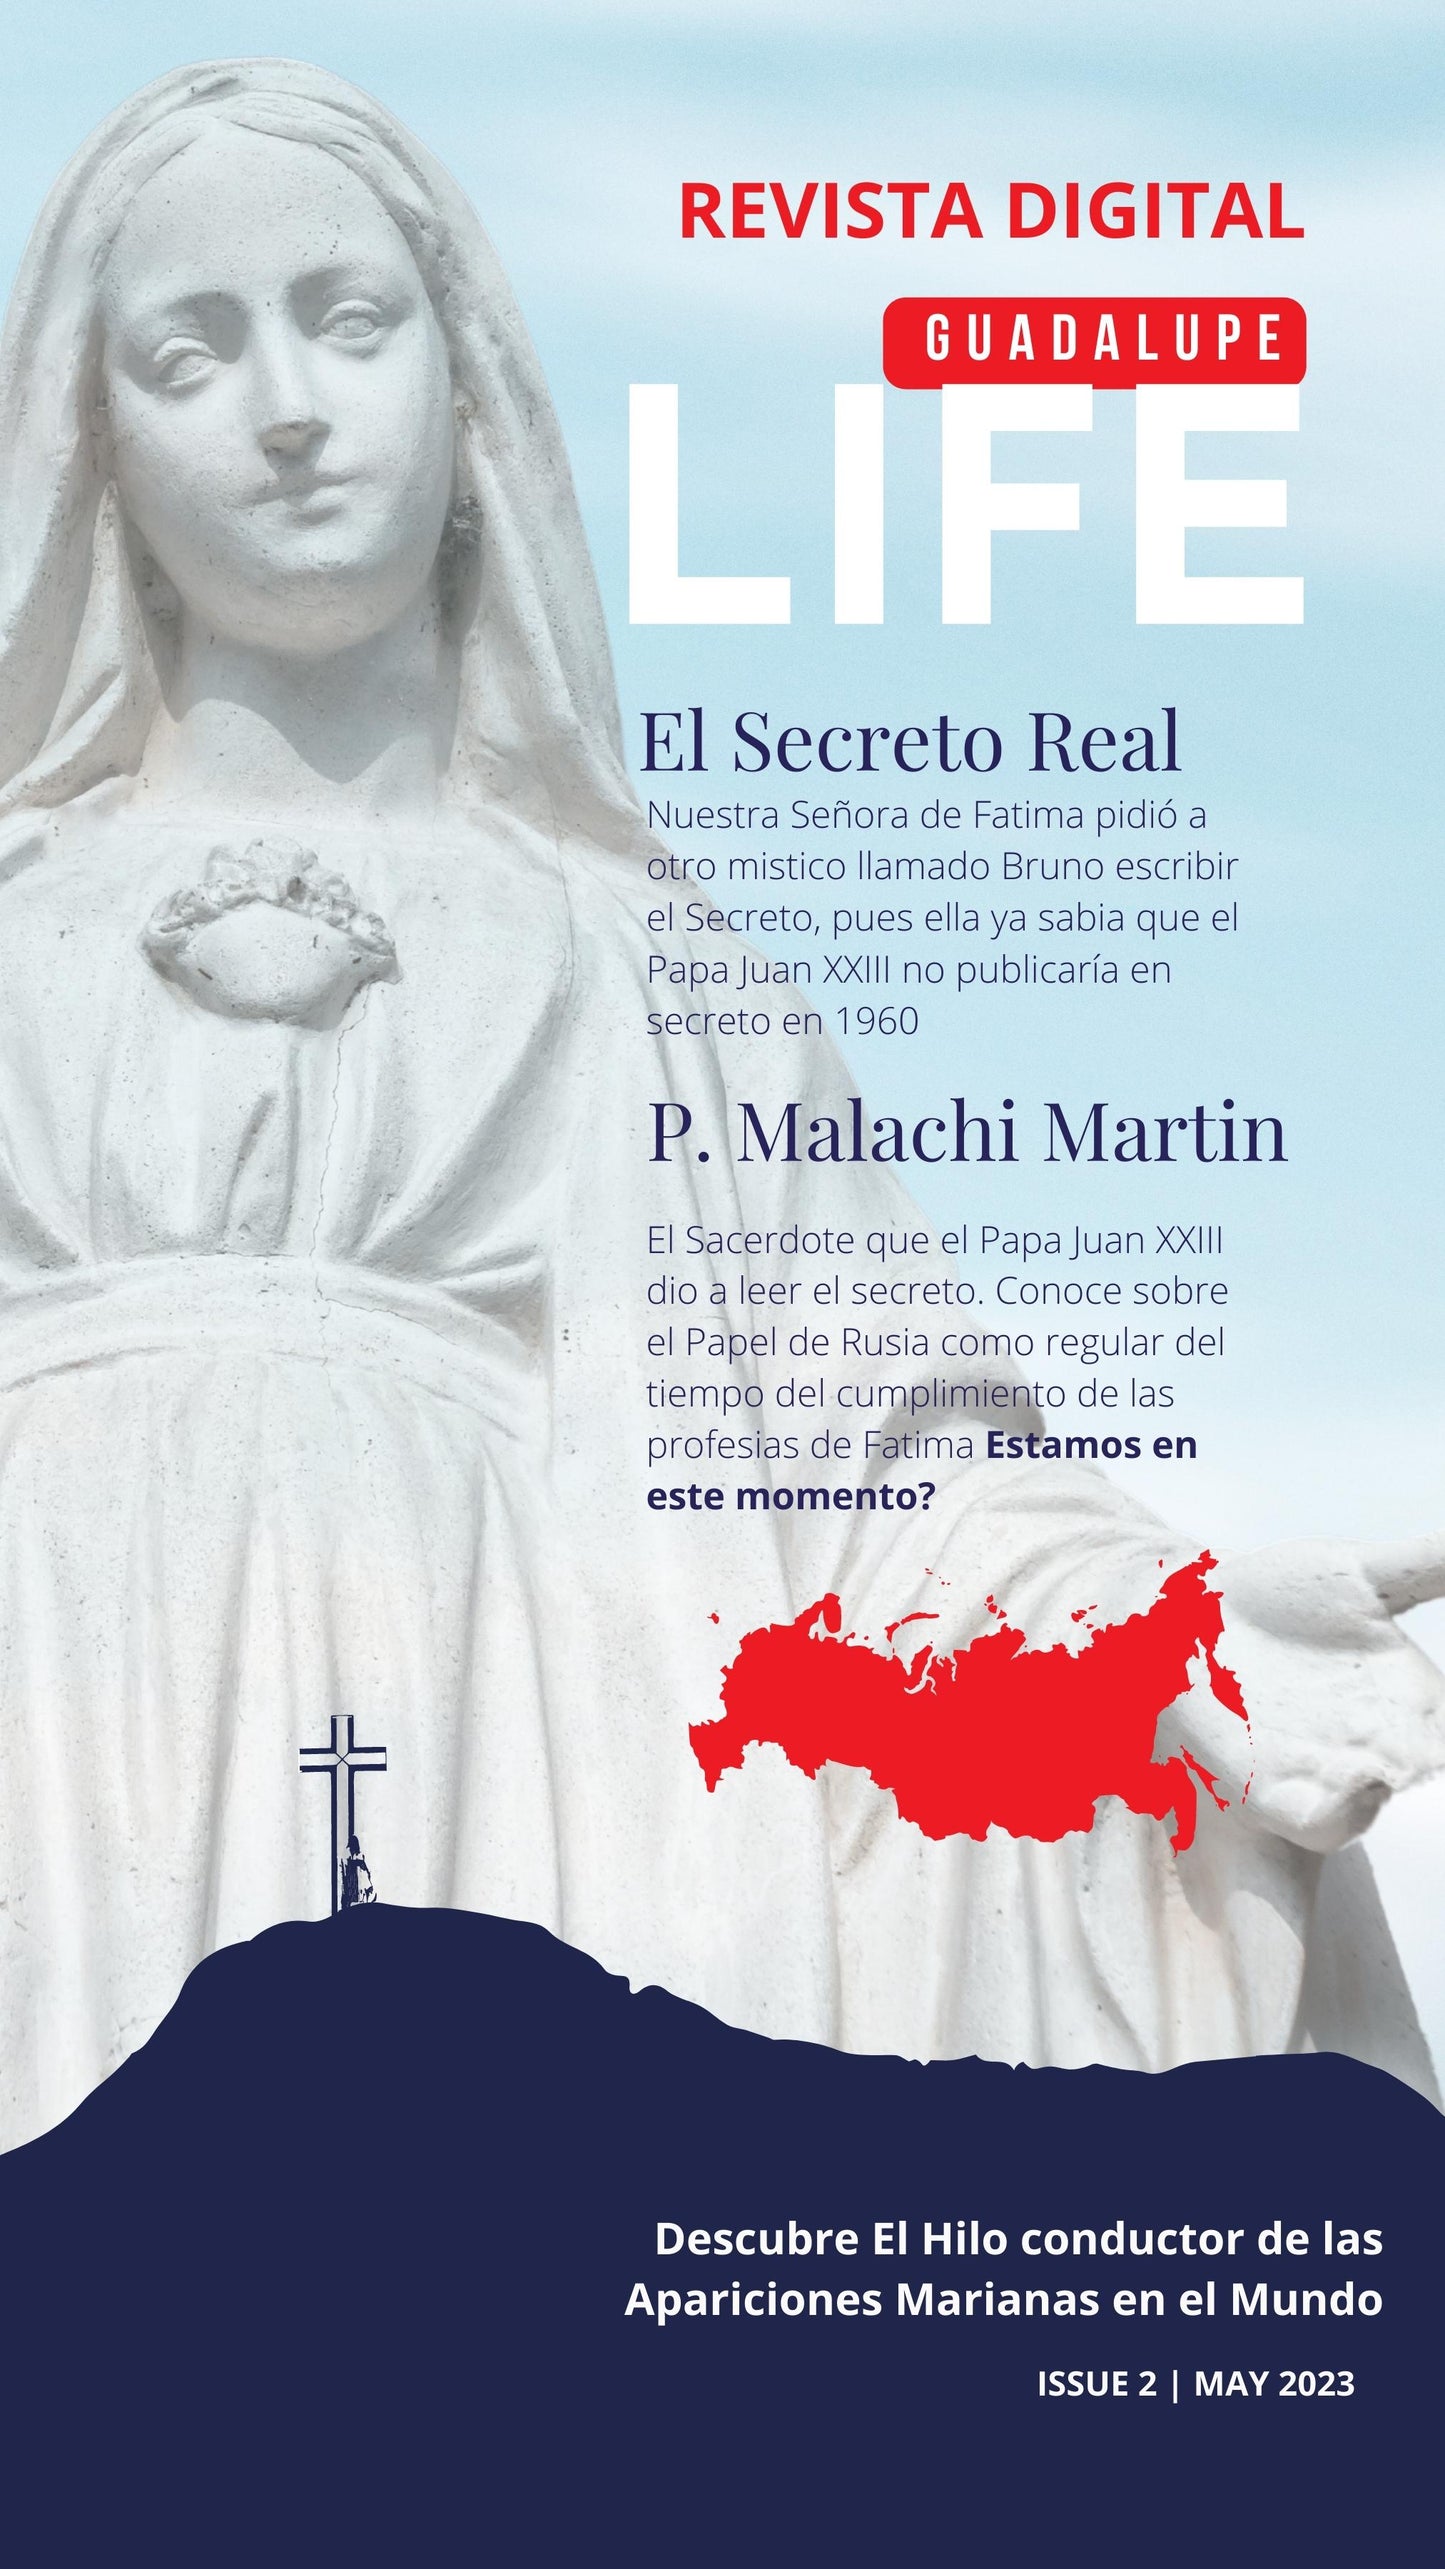 Guadalupe Life - Issue 2 FATIMA | English - Español